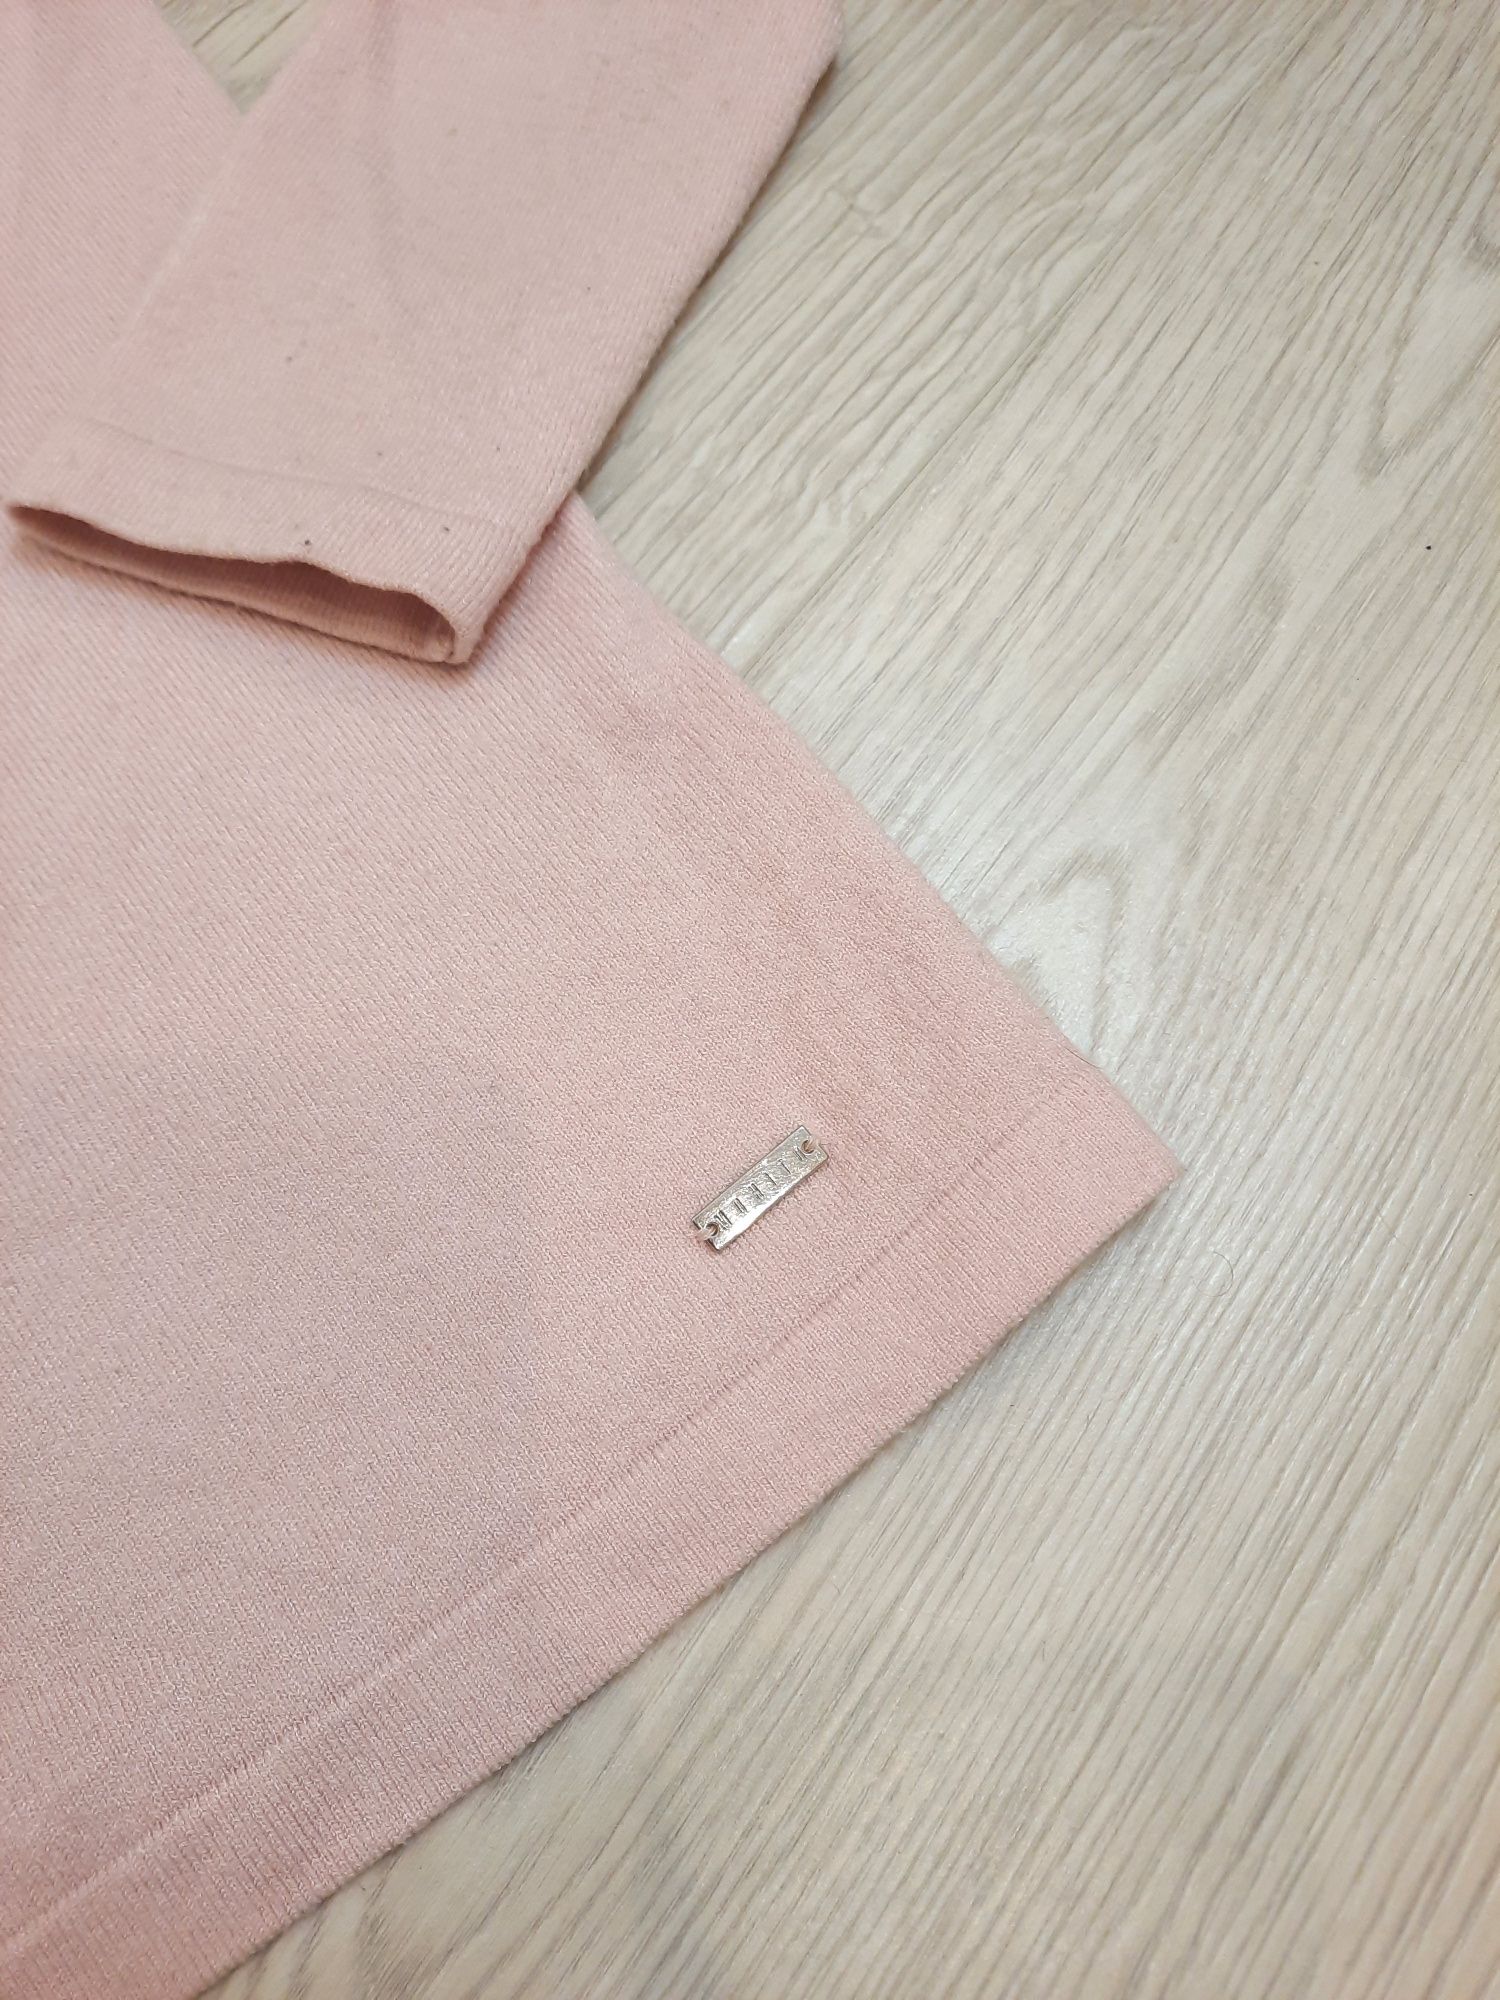 Рожевий пуловер з відкритими плечами Mohito (M розмір)